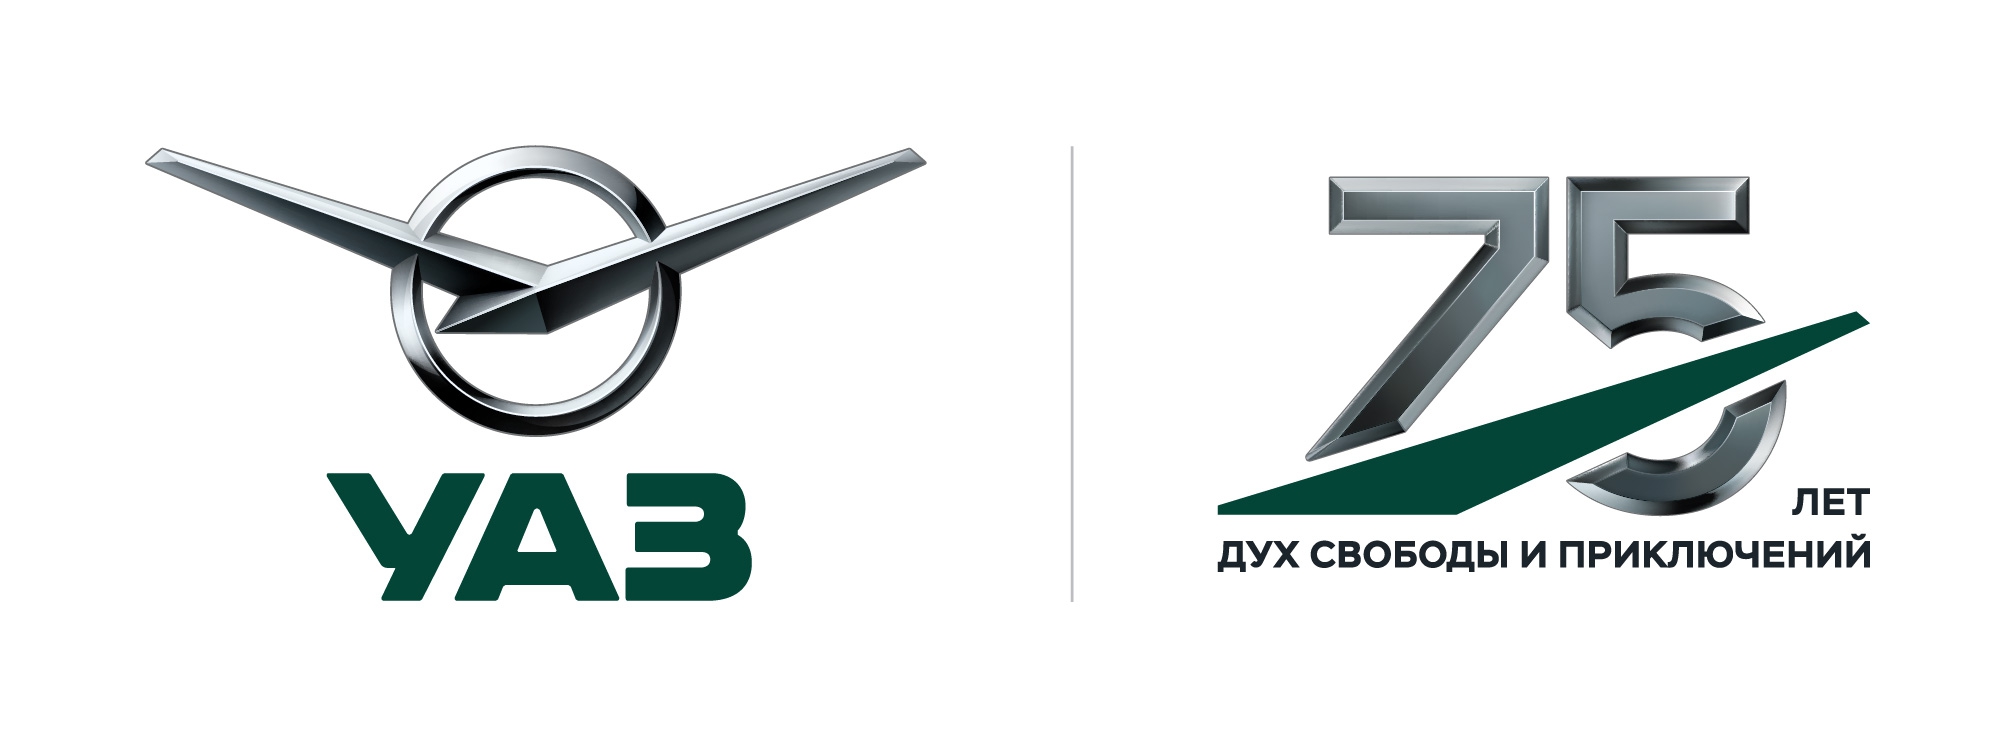 Юбилейный логотип УАЗ.jpg